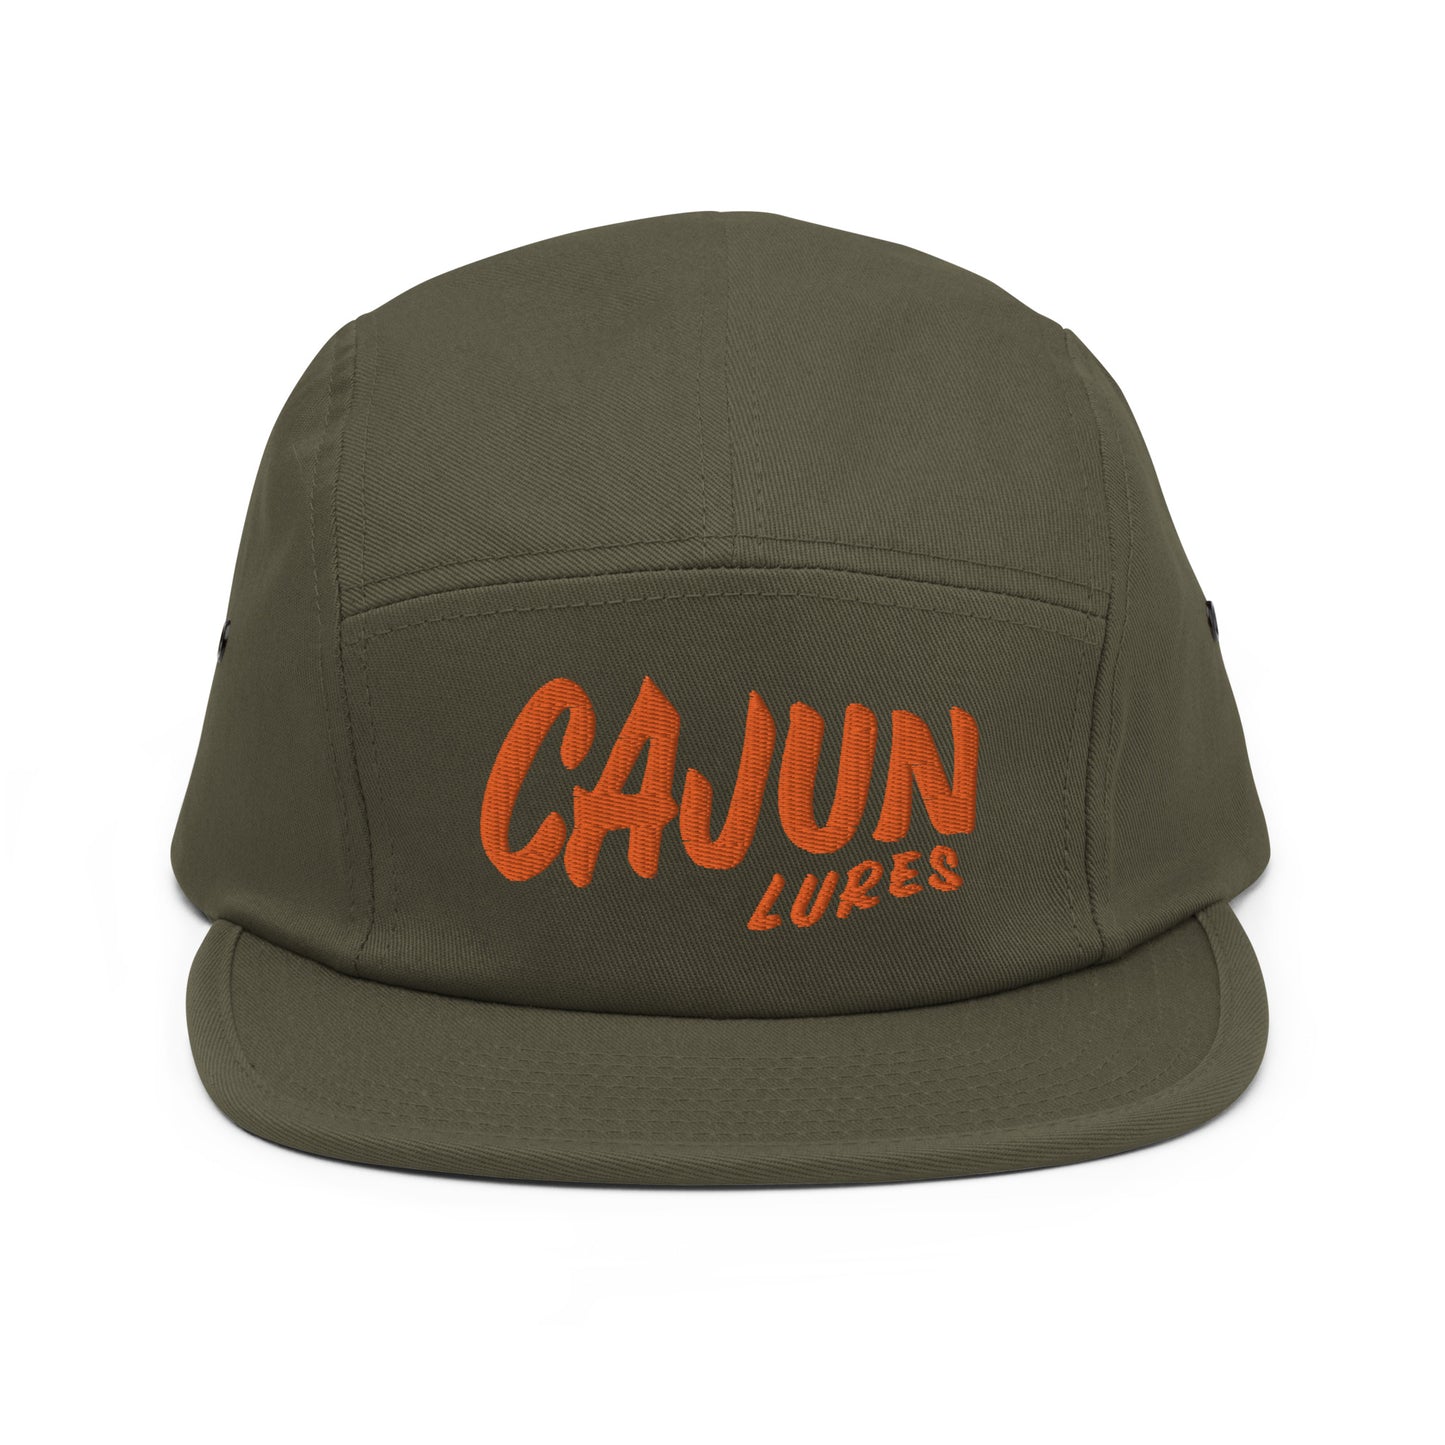 Cajun Camper Cap - Cajun Lures